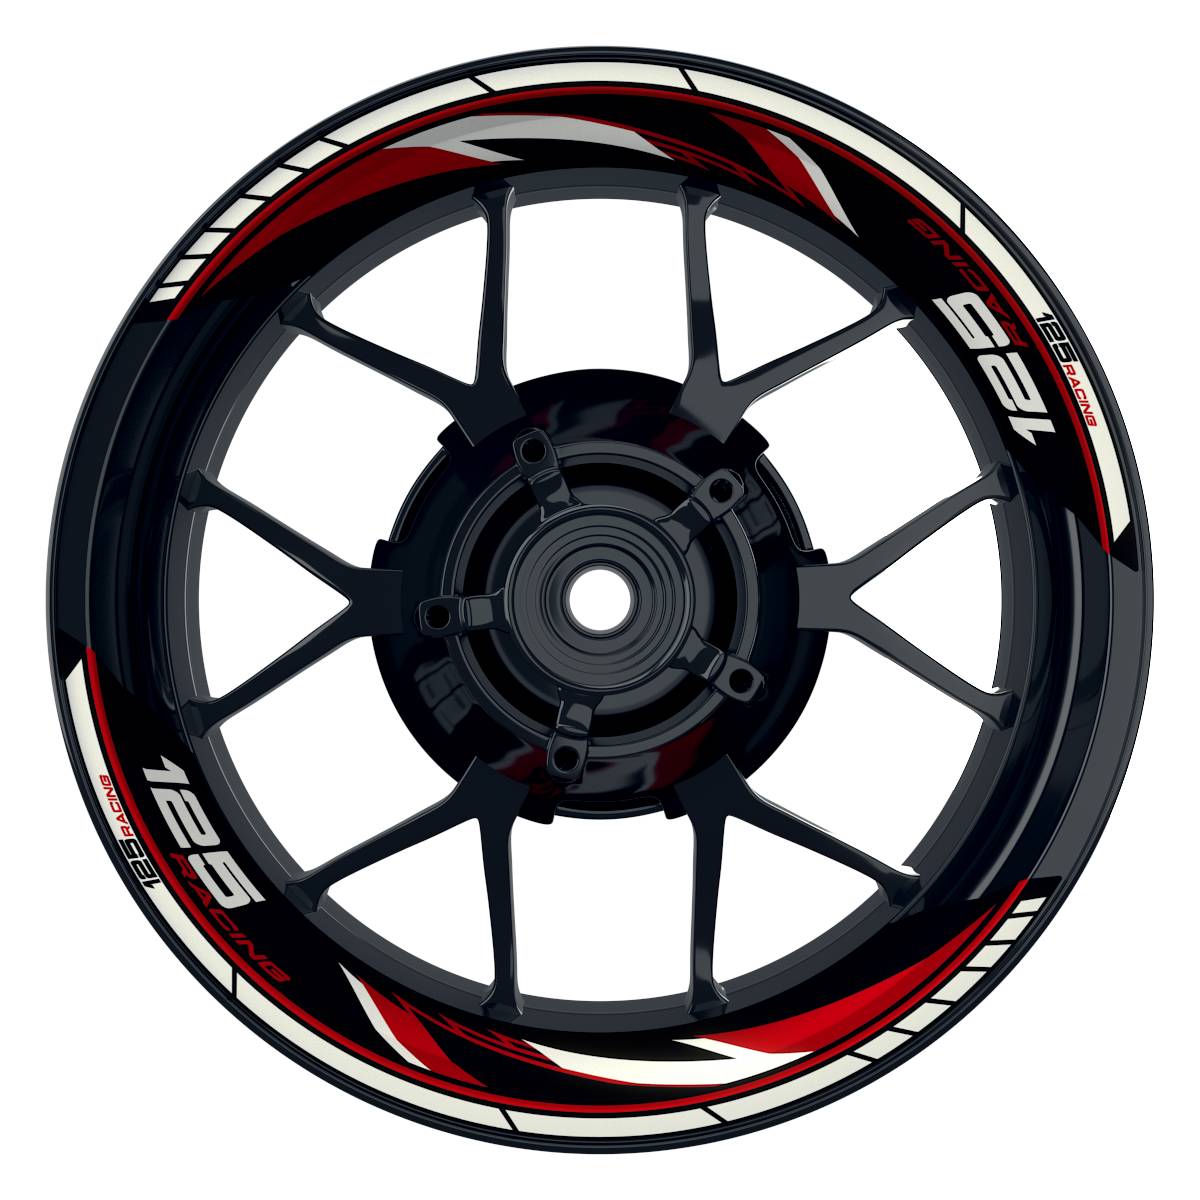 KTM Racing 125 Razor schwarz rot Frontansicht